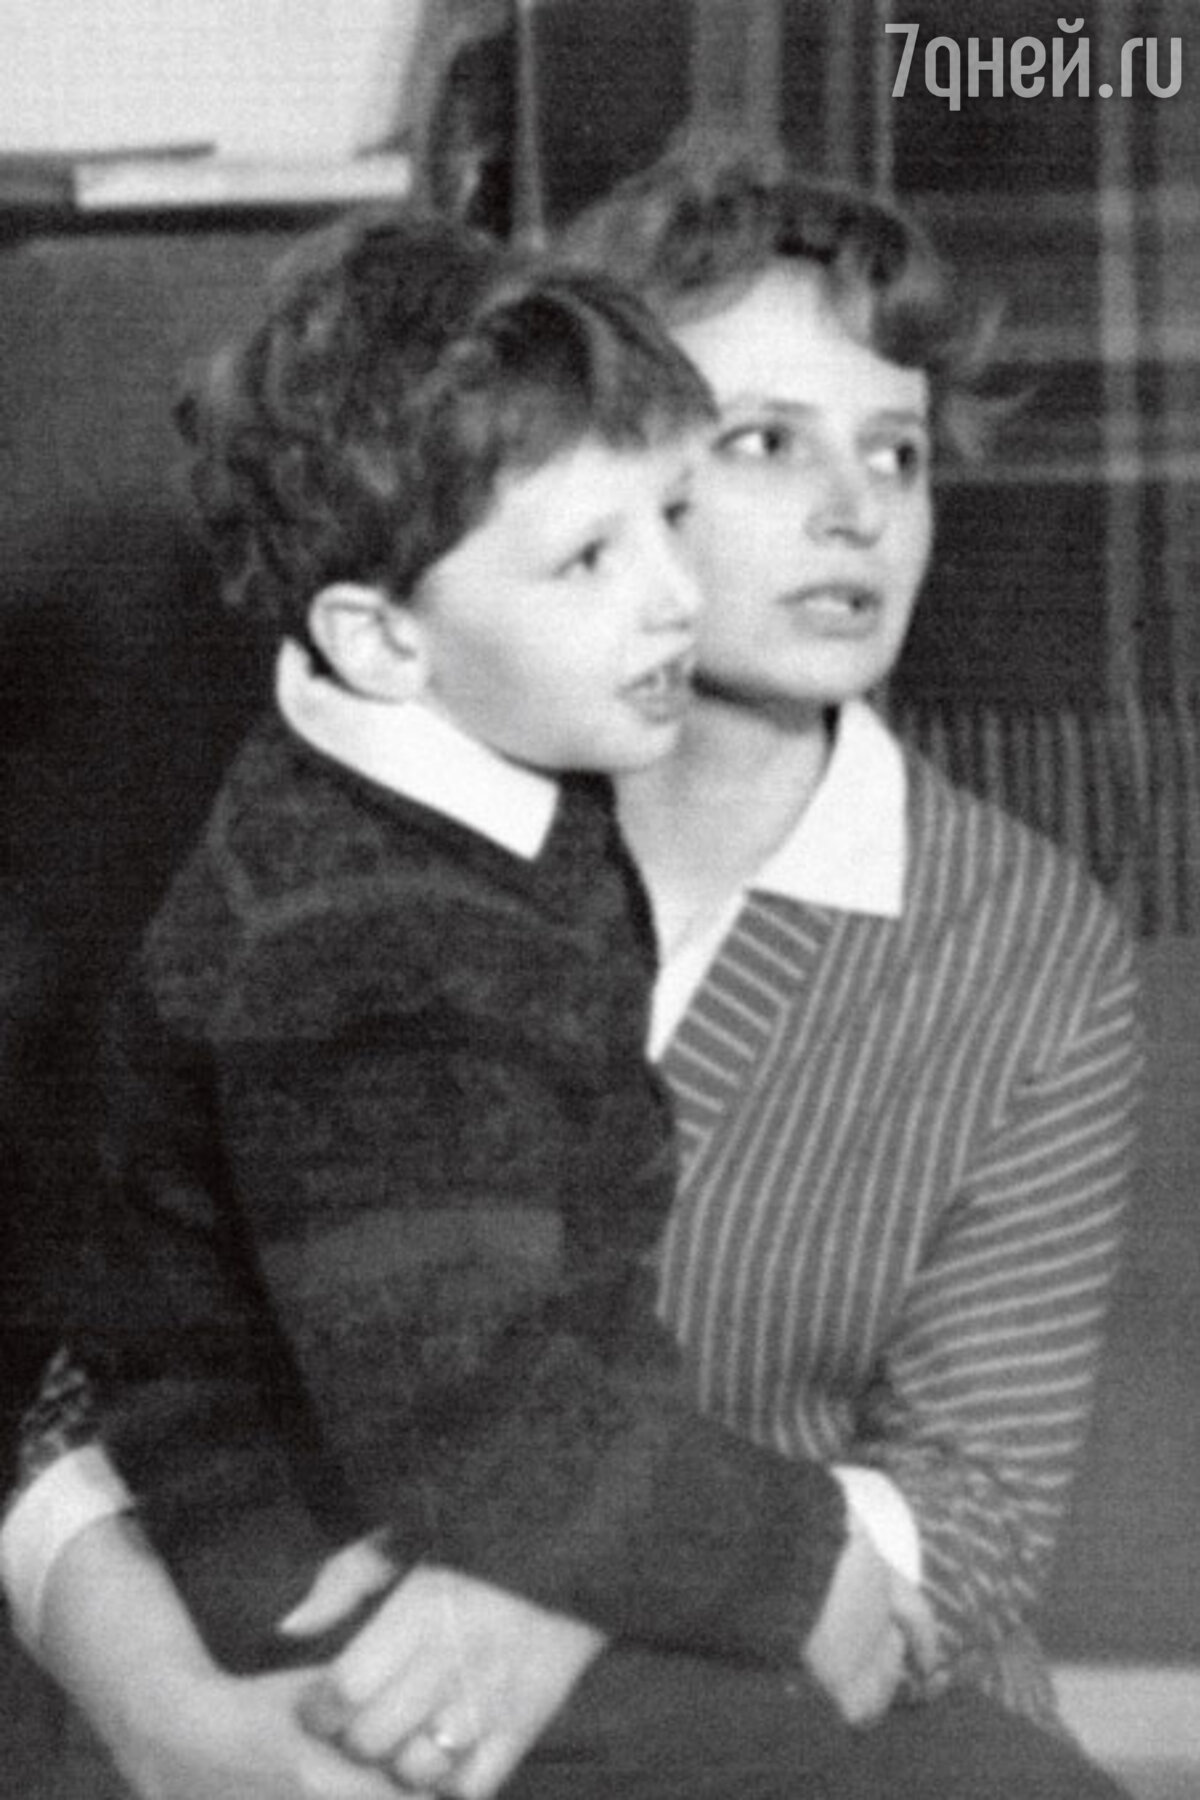 Ширвиндт и белоусова в молодости фото